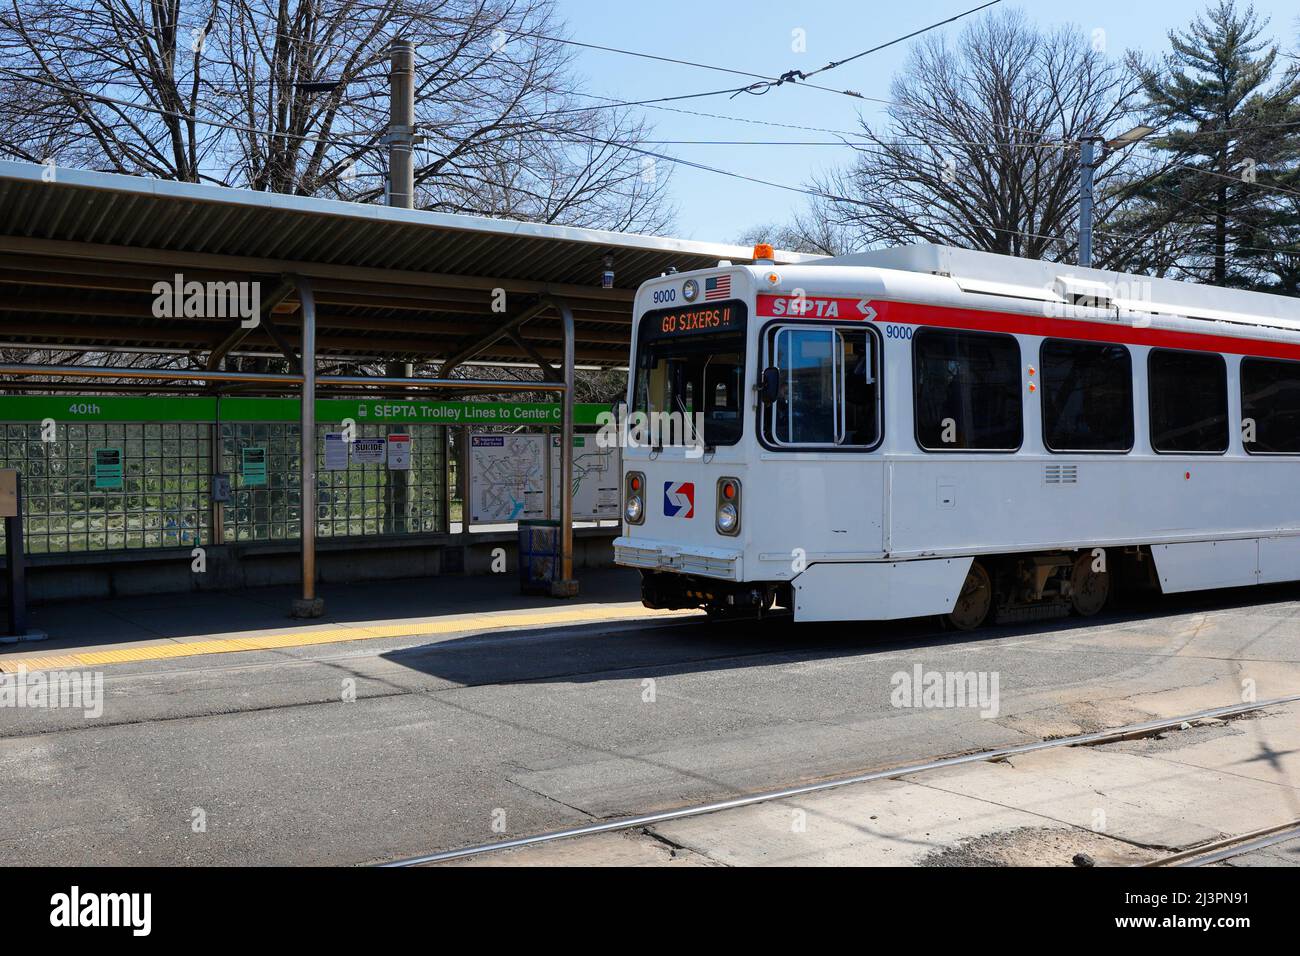 Un AUTOBUS A tram SETTA con 'Go Sixers!!' Lo schermo si fermò al 40th in direzione est verso il centro di Philadelphia. Foto Stock